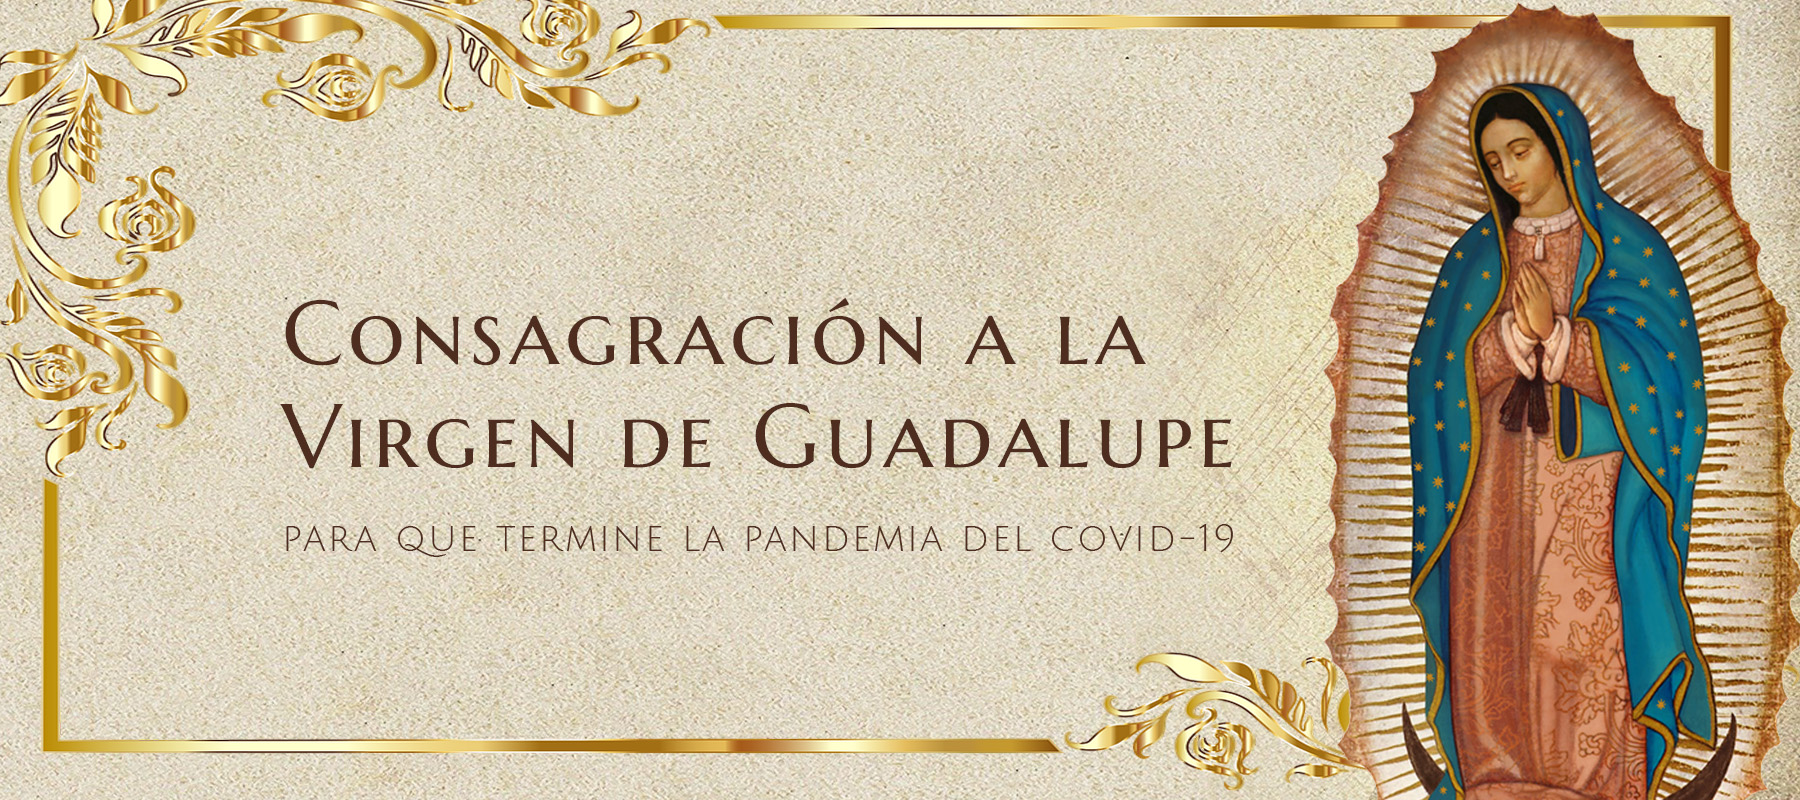 Consagración a la Virgen de Guadalupe